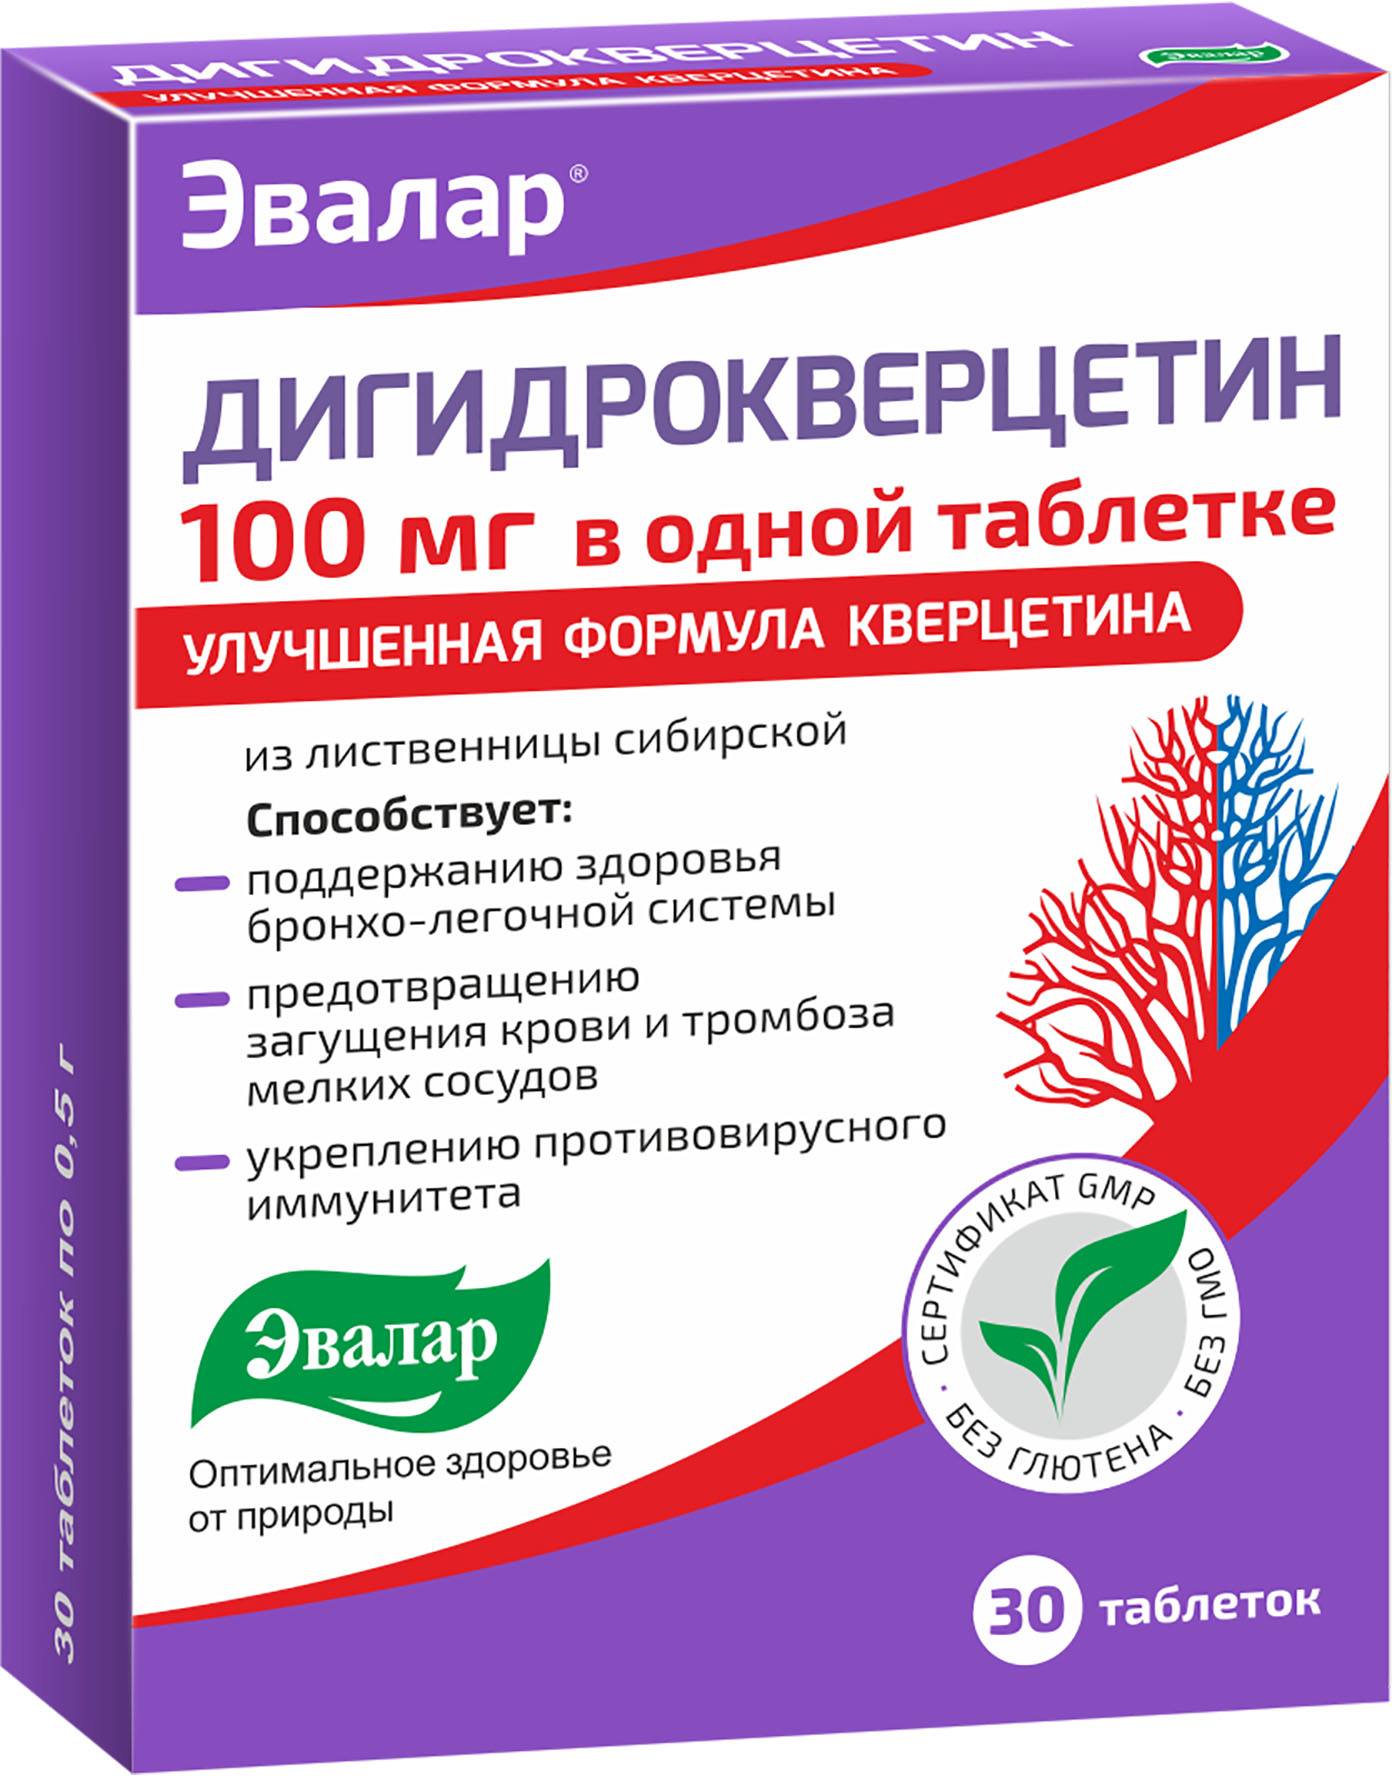 Дигидрокверцетин 100 мг, таблетки 0.5 г, 30 шт. дигидрокверцетин таб 100 мг 30 шт